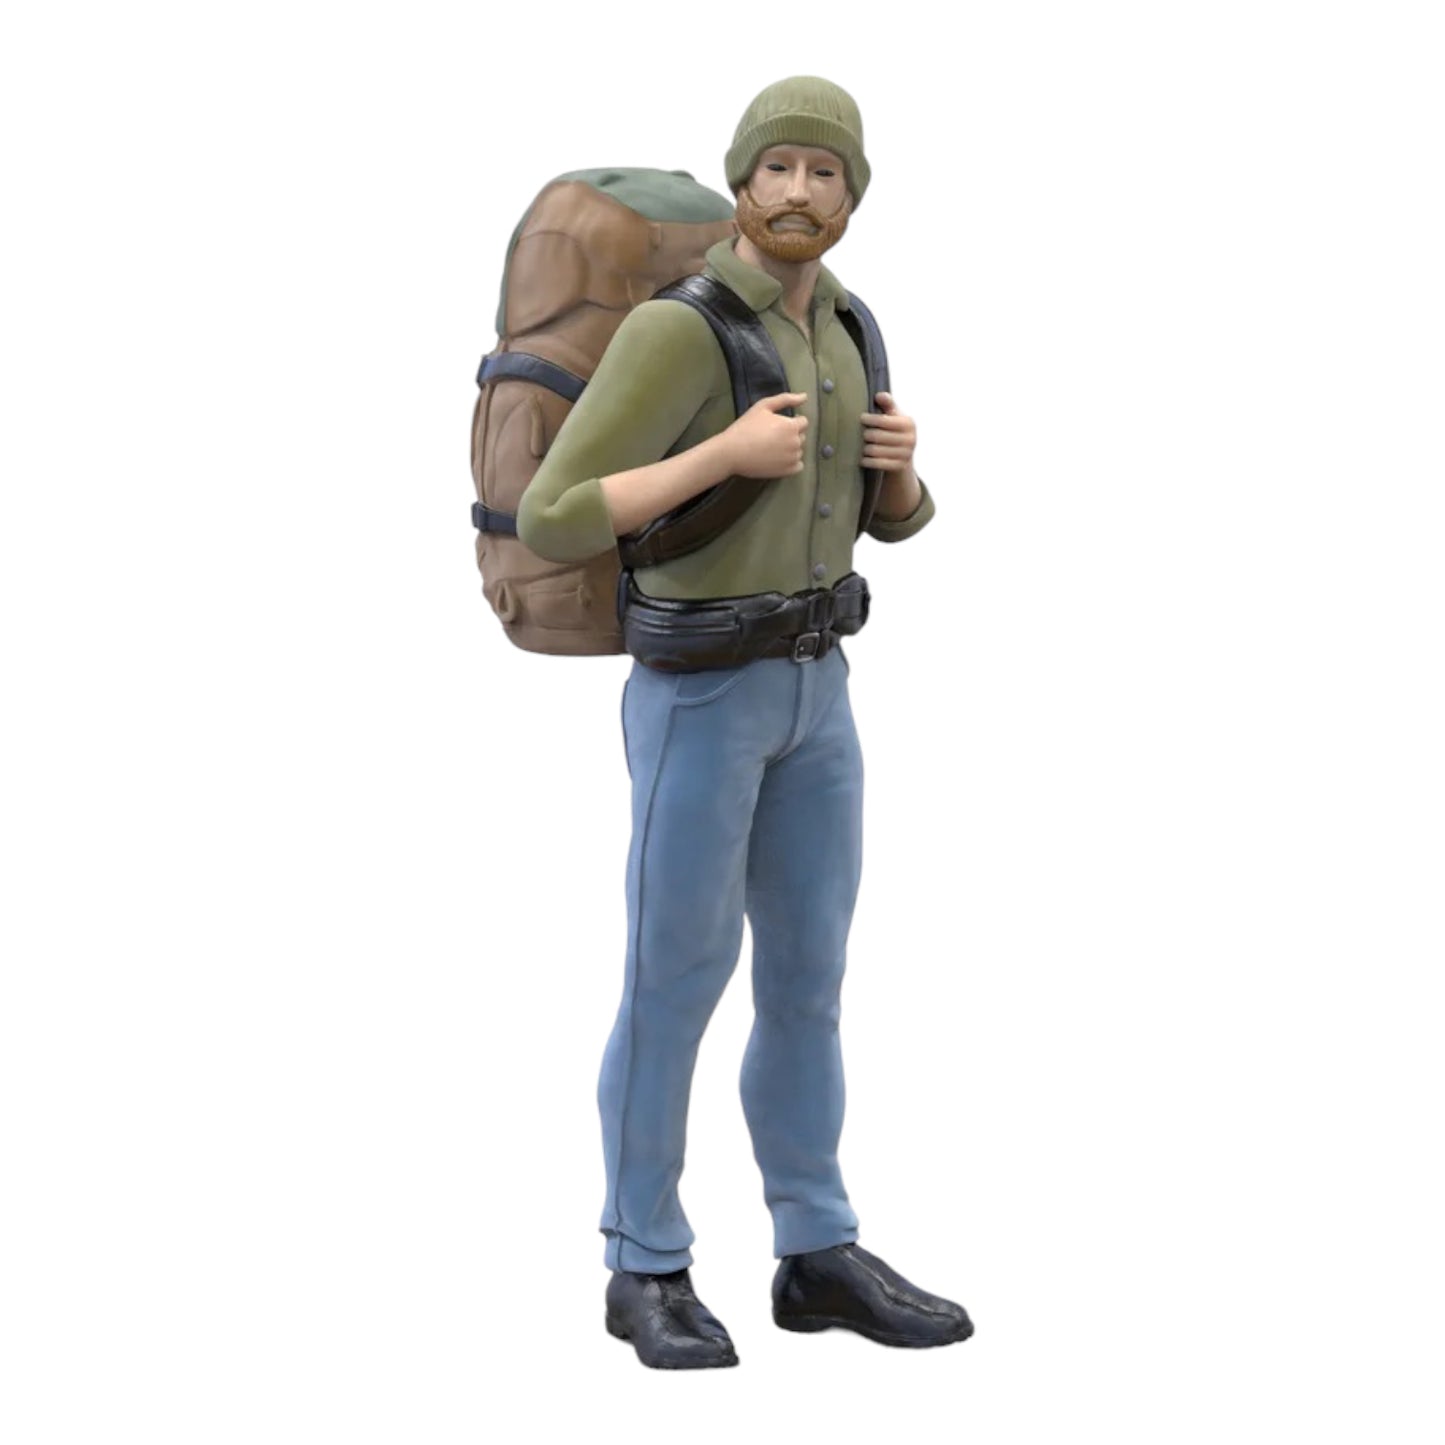 Produktfoto Diorama und Modellbau Miniatur Figur: Wanderer mit Rucksack 2